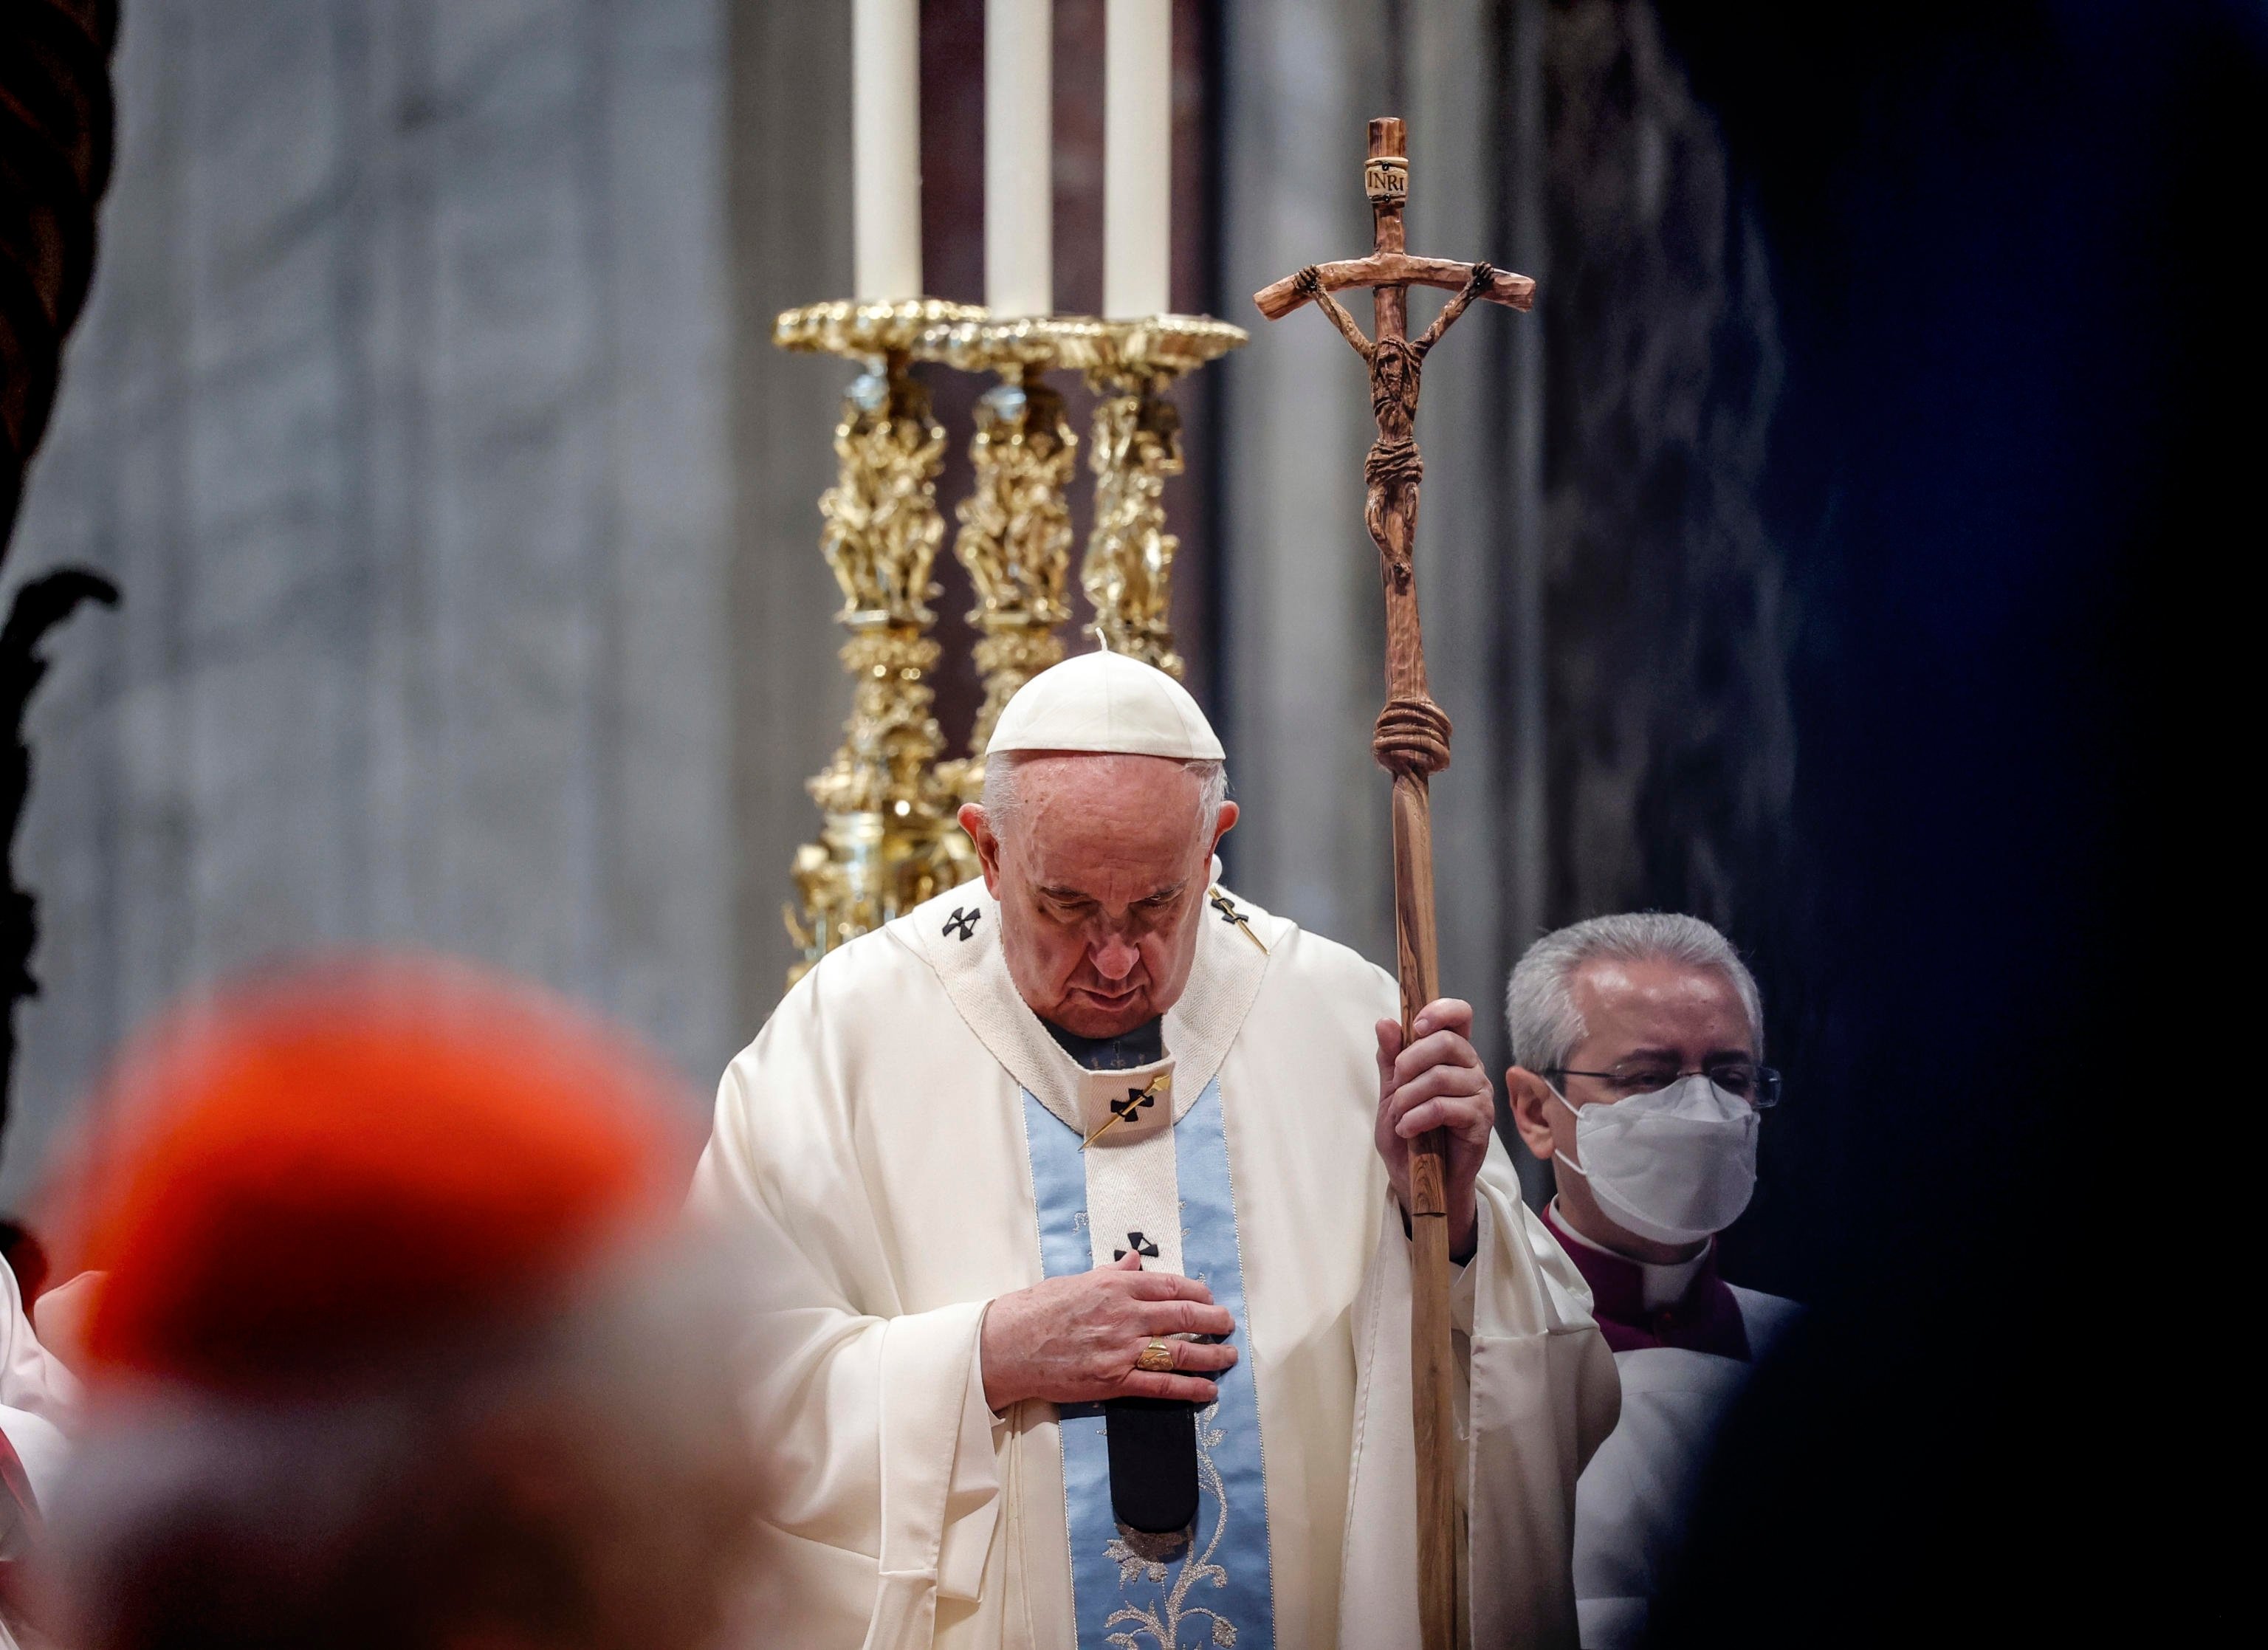 El Papa denuncia la violència masclista: "Prou, ferir una dona és ultratjar Déu"